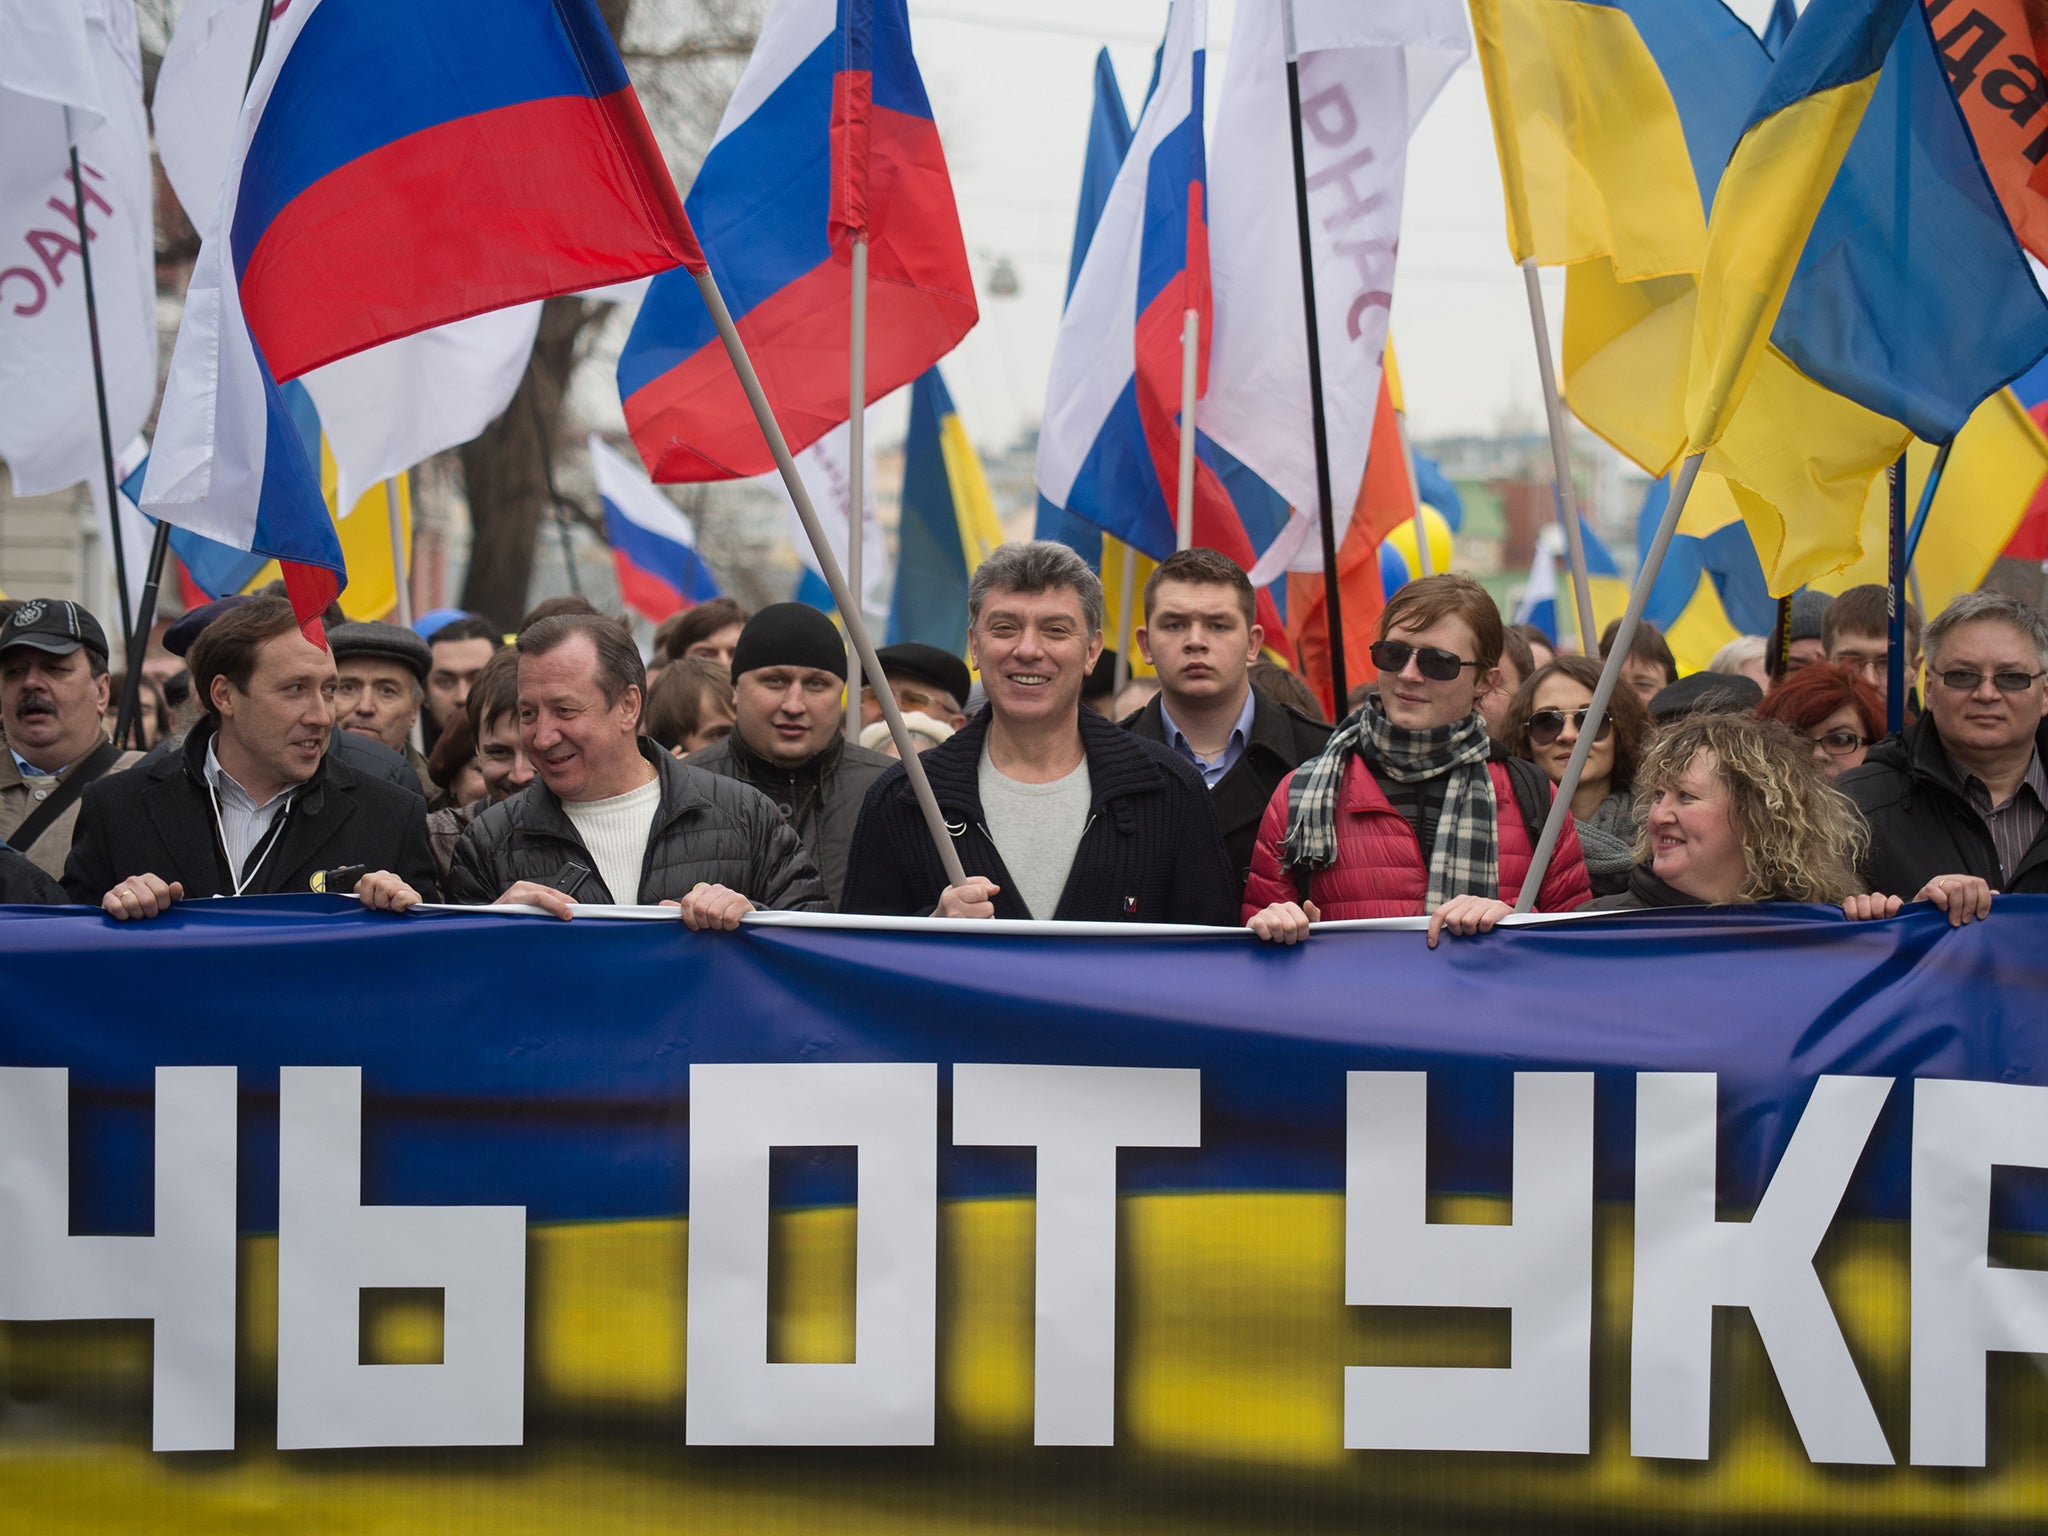 Nemsov has been an outspoken critic of Putin